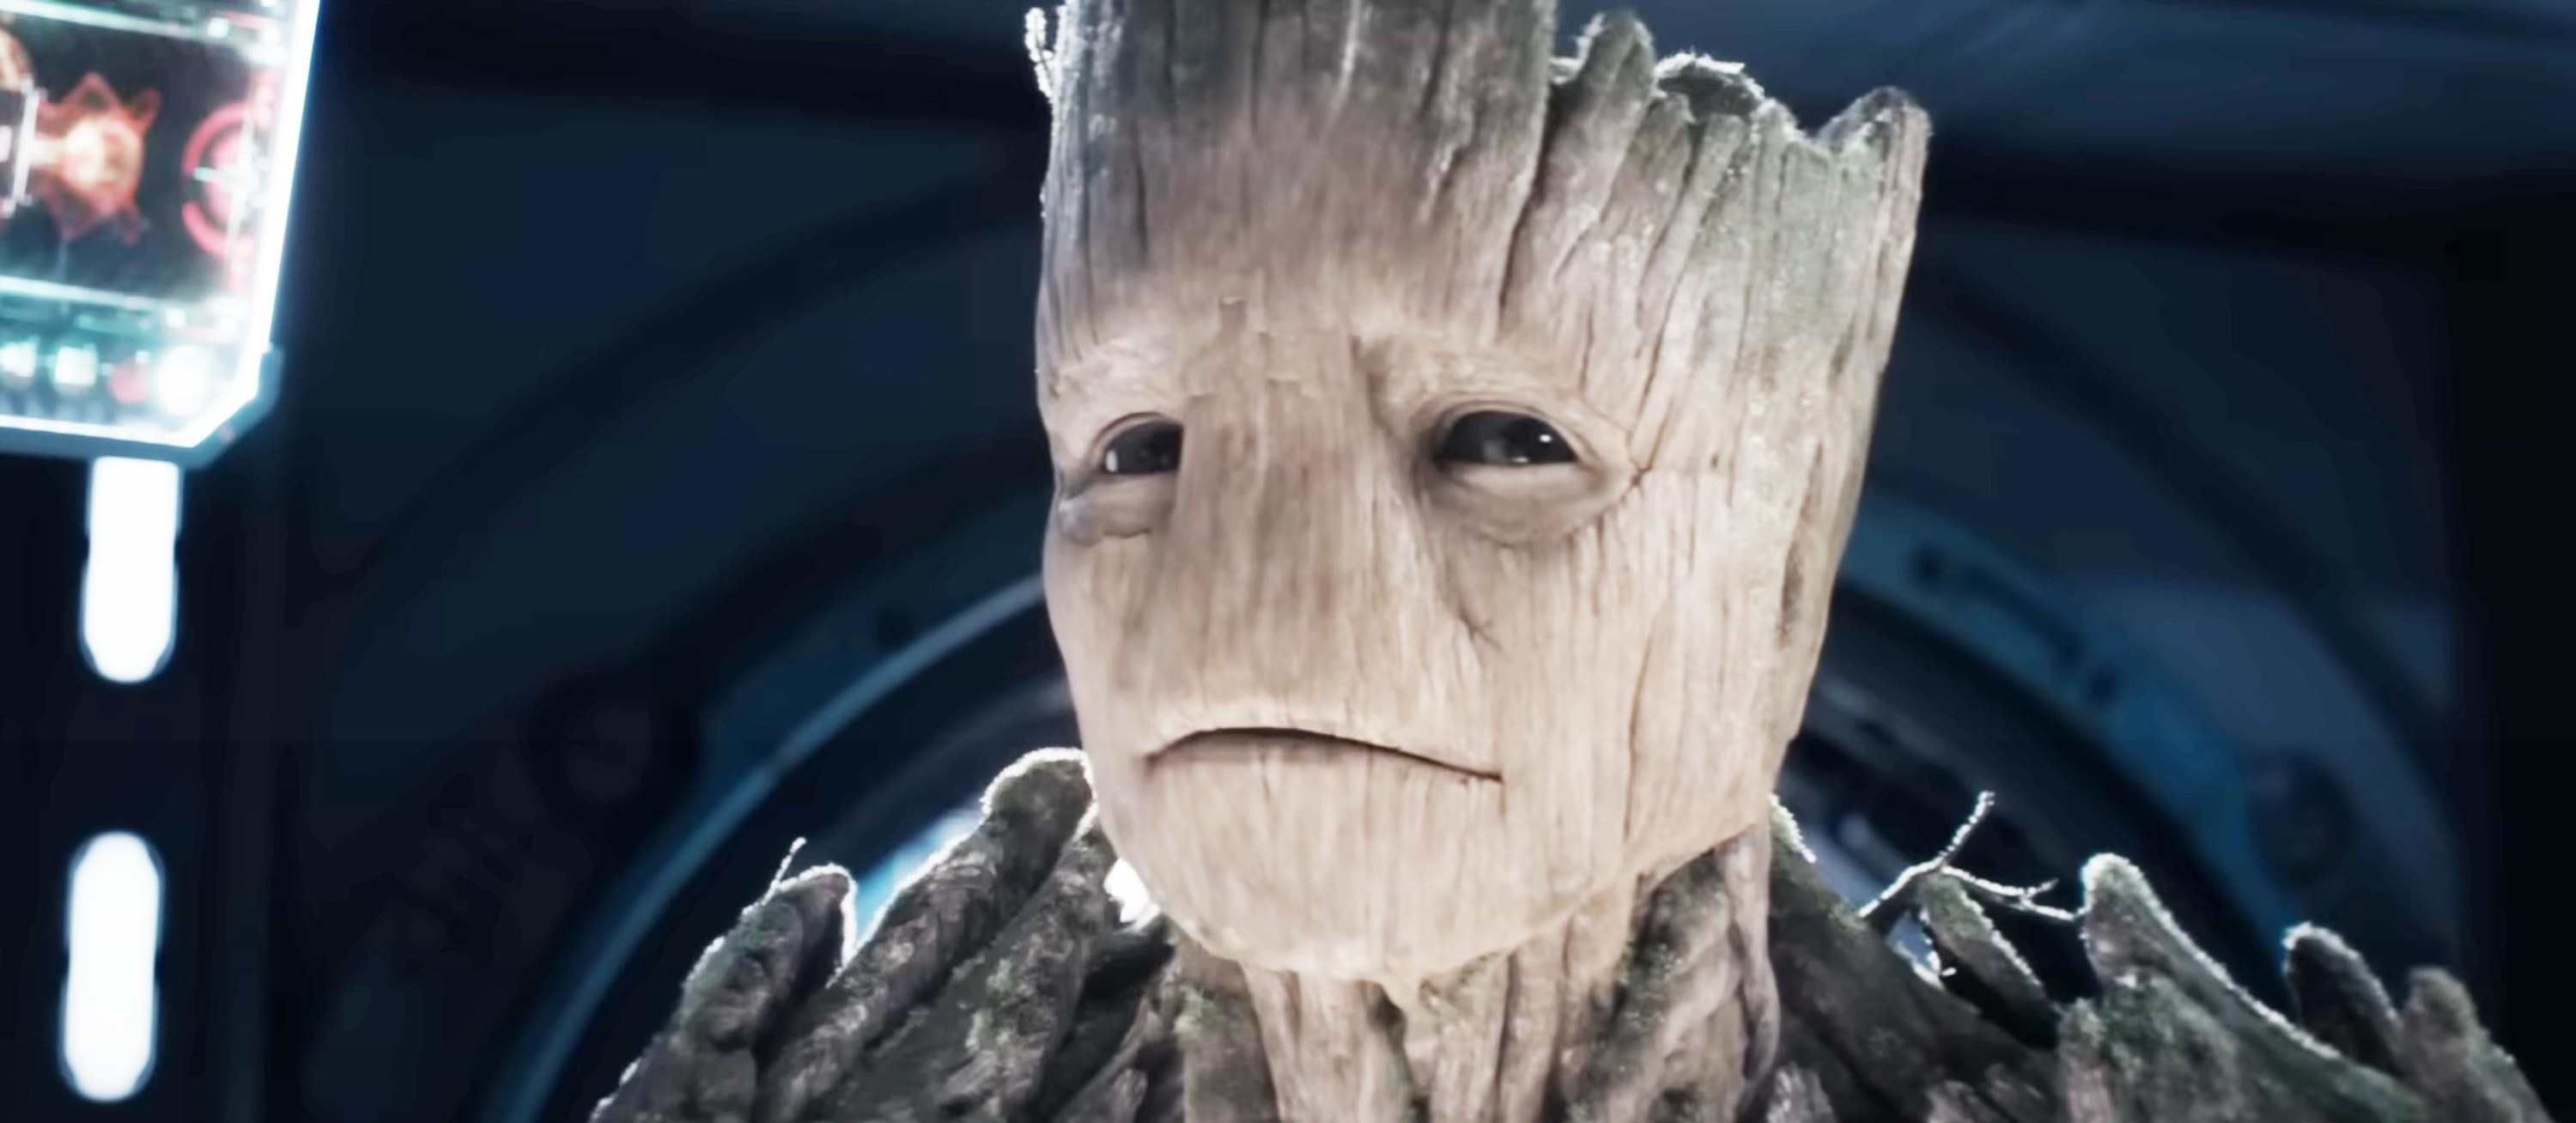 Closeup of Groot